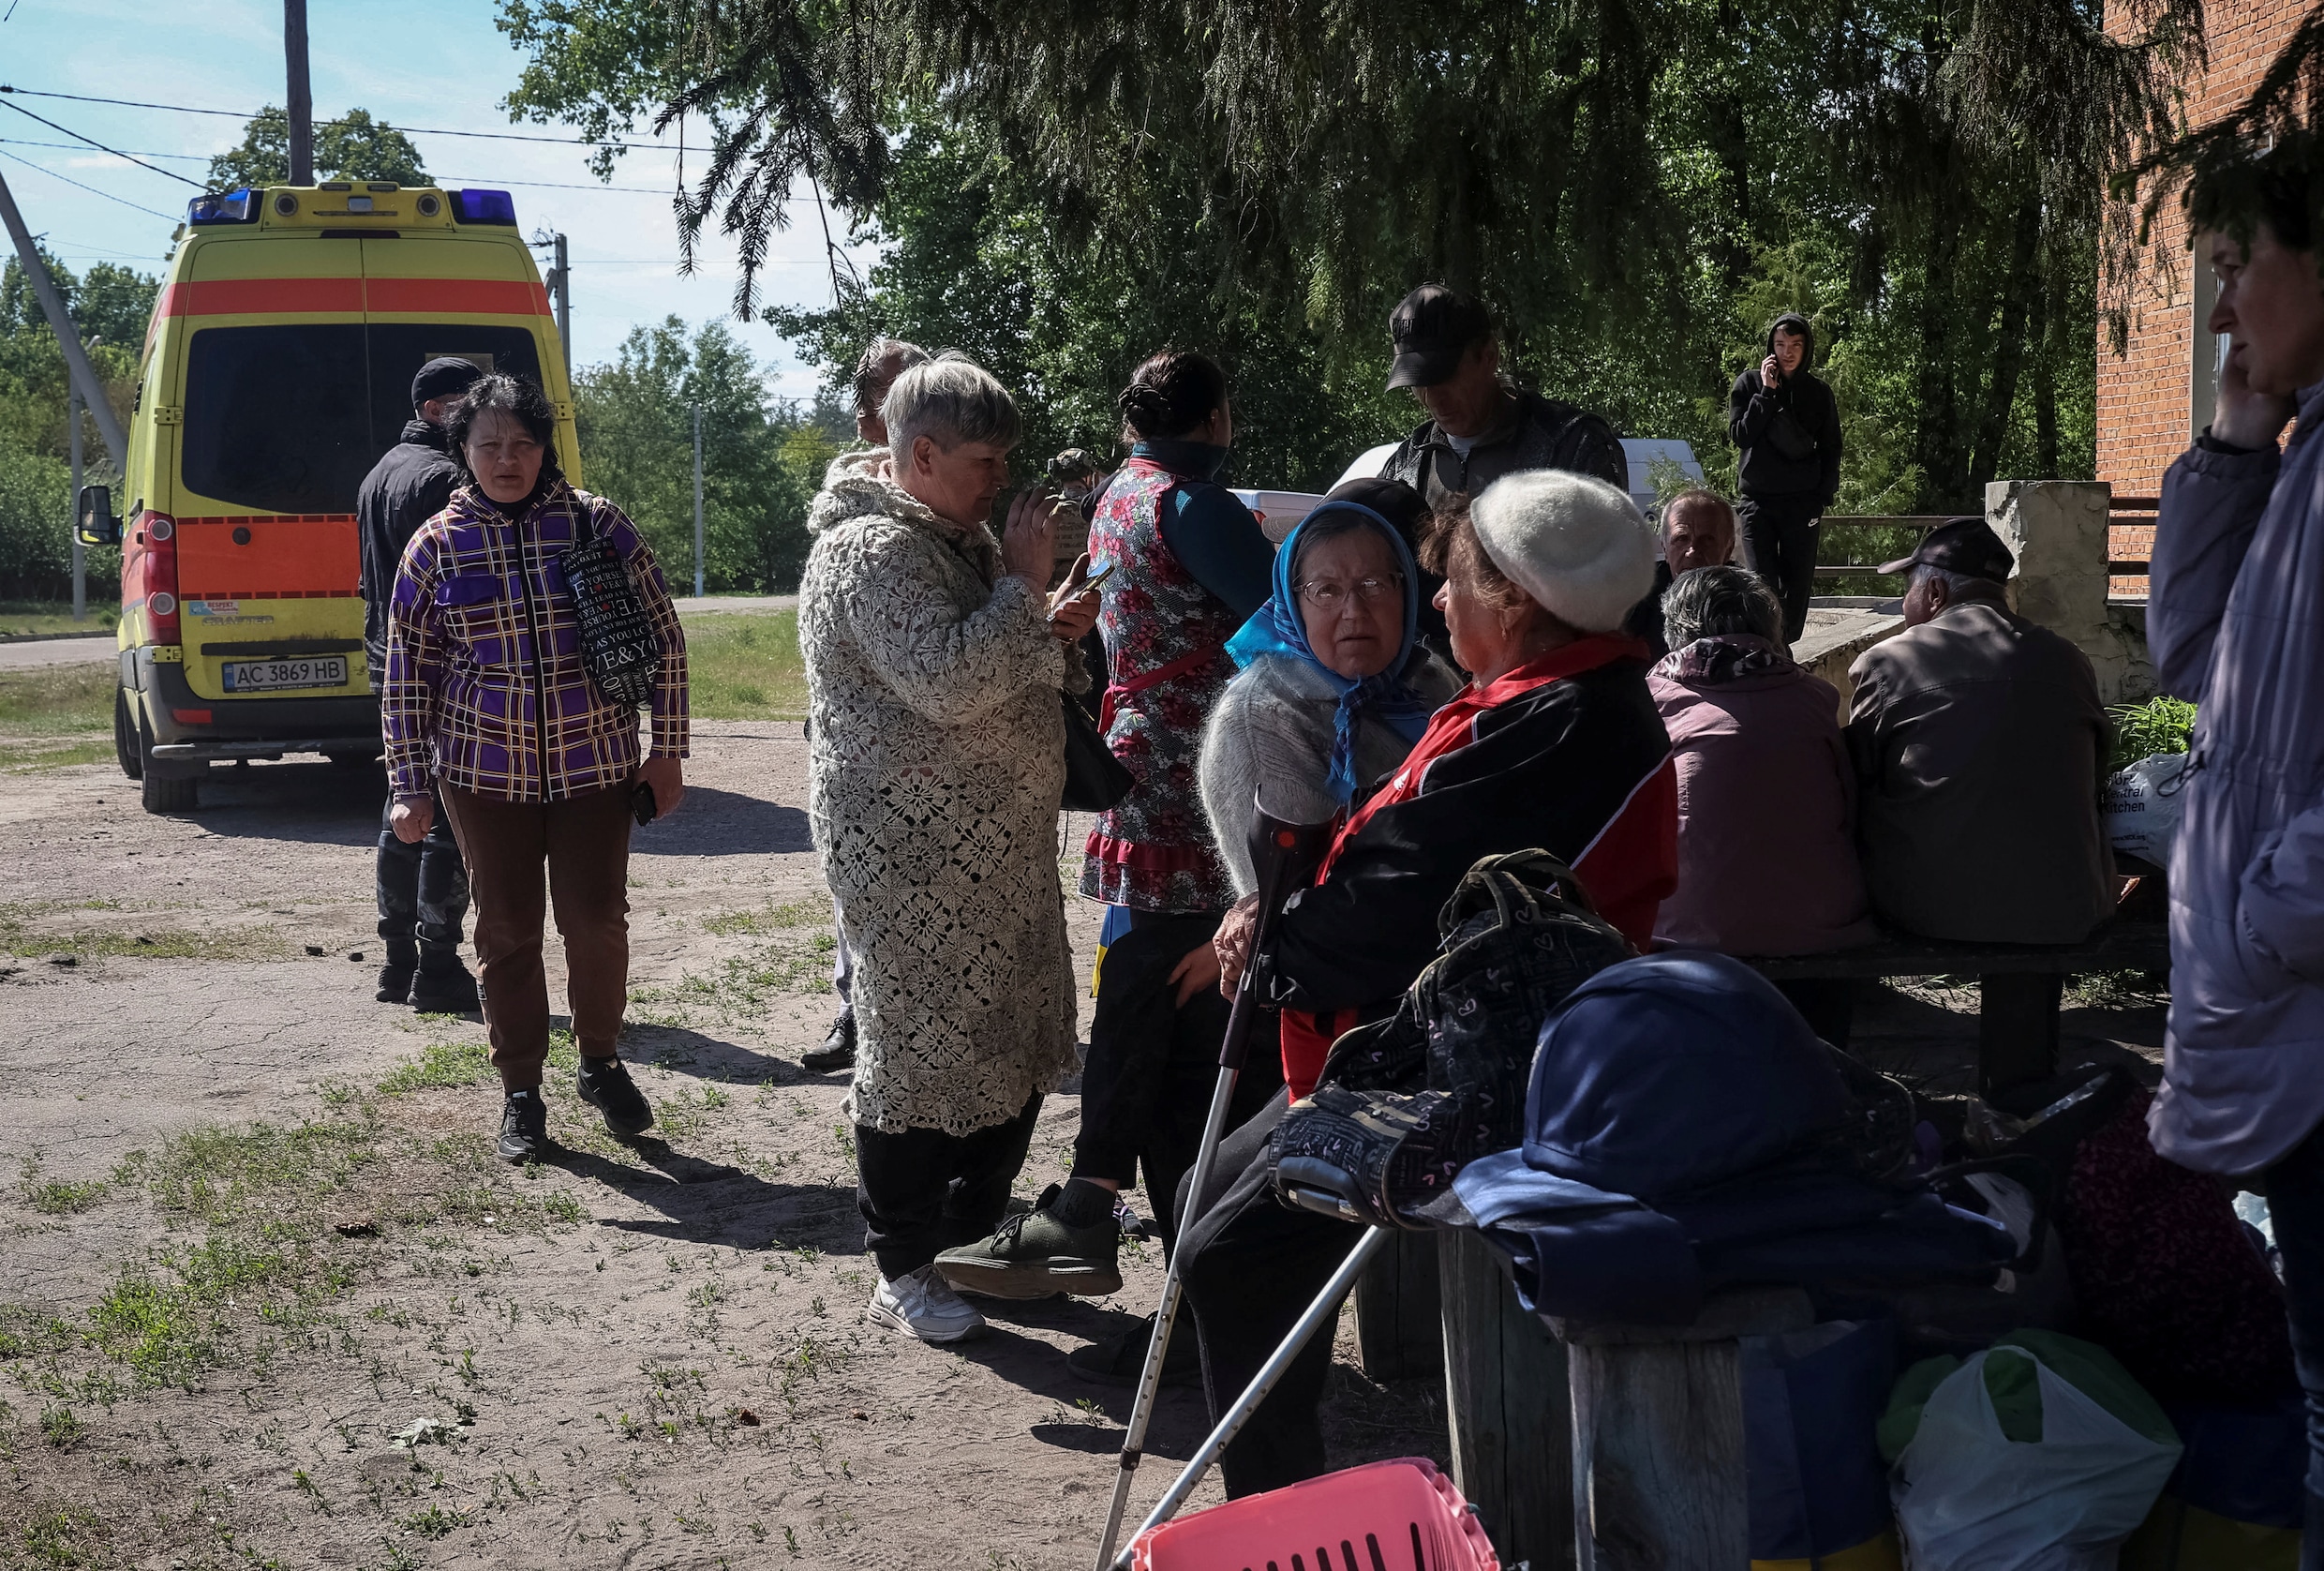 Live - Oekraïne. Honderden mensen geëvacueerd in oblast Charkiv na Russische aanval